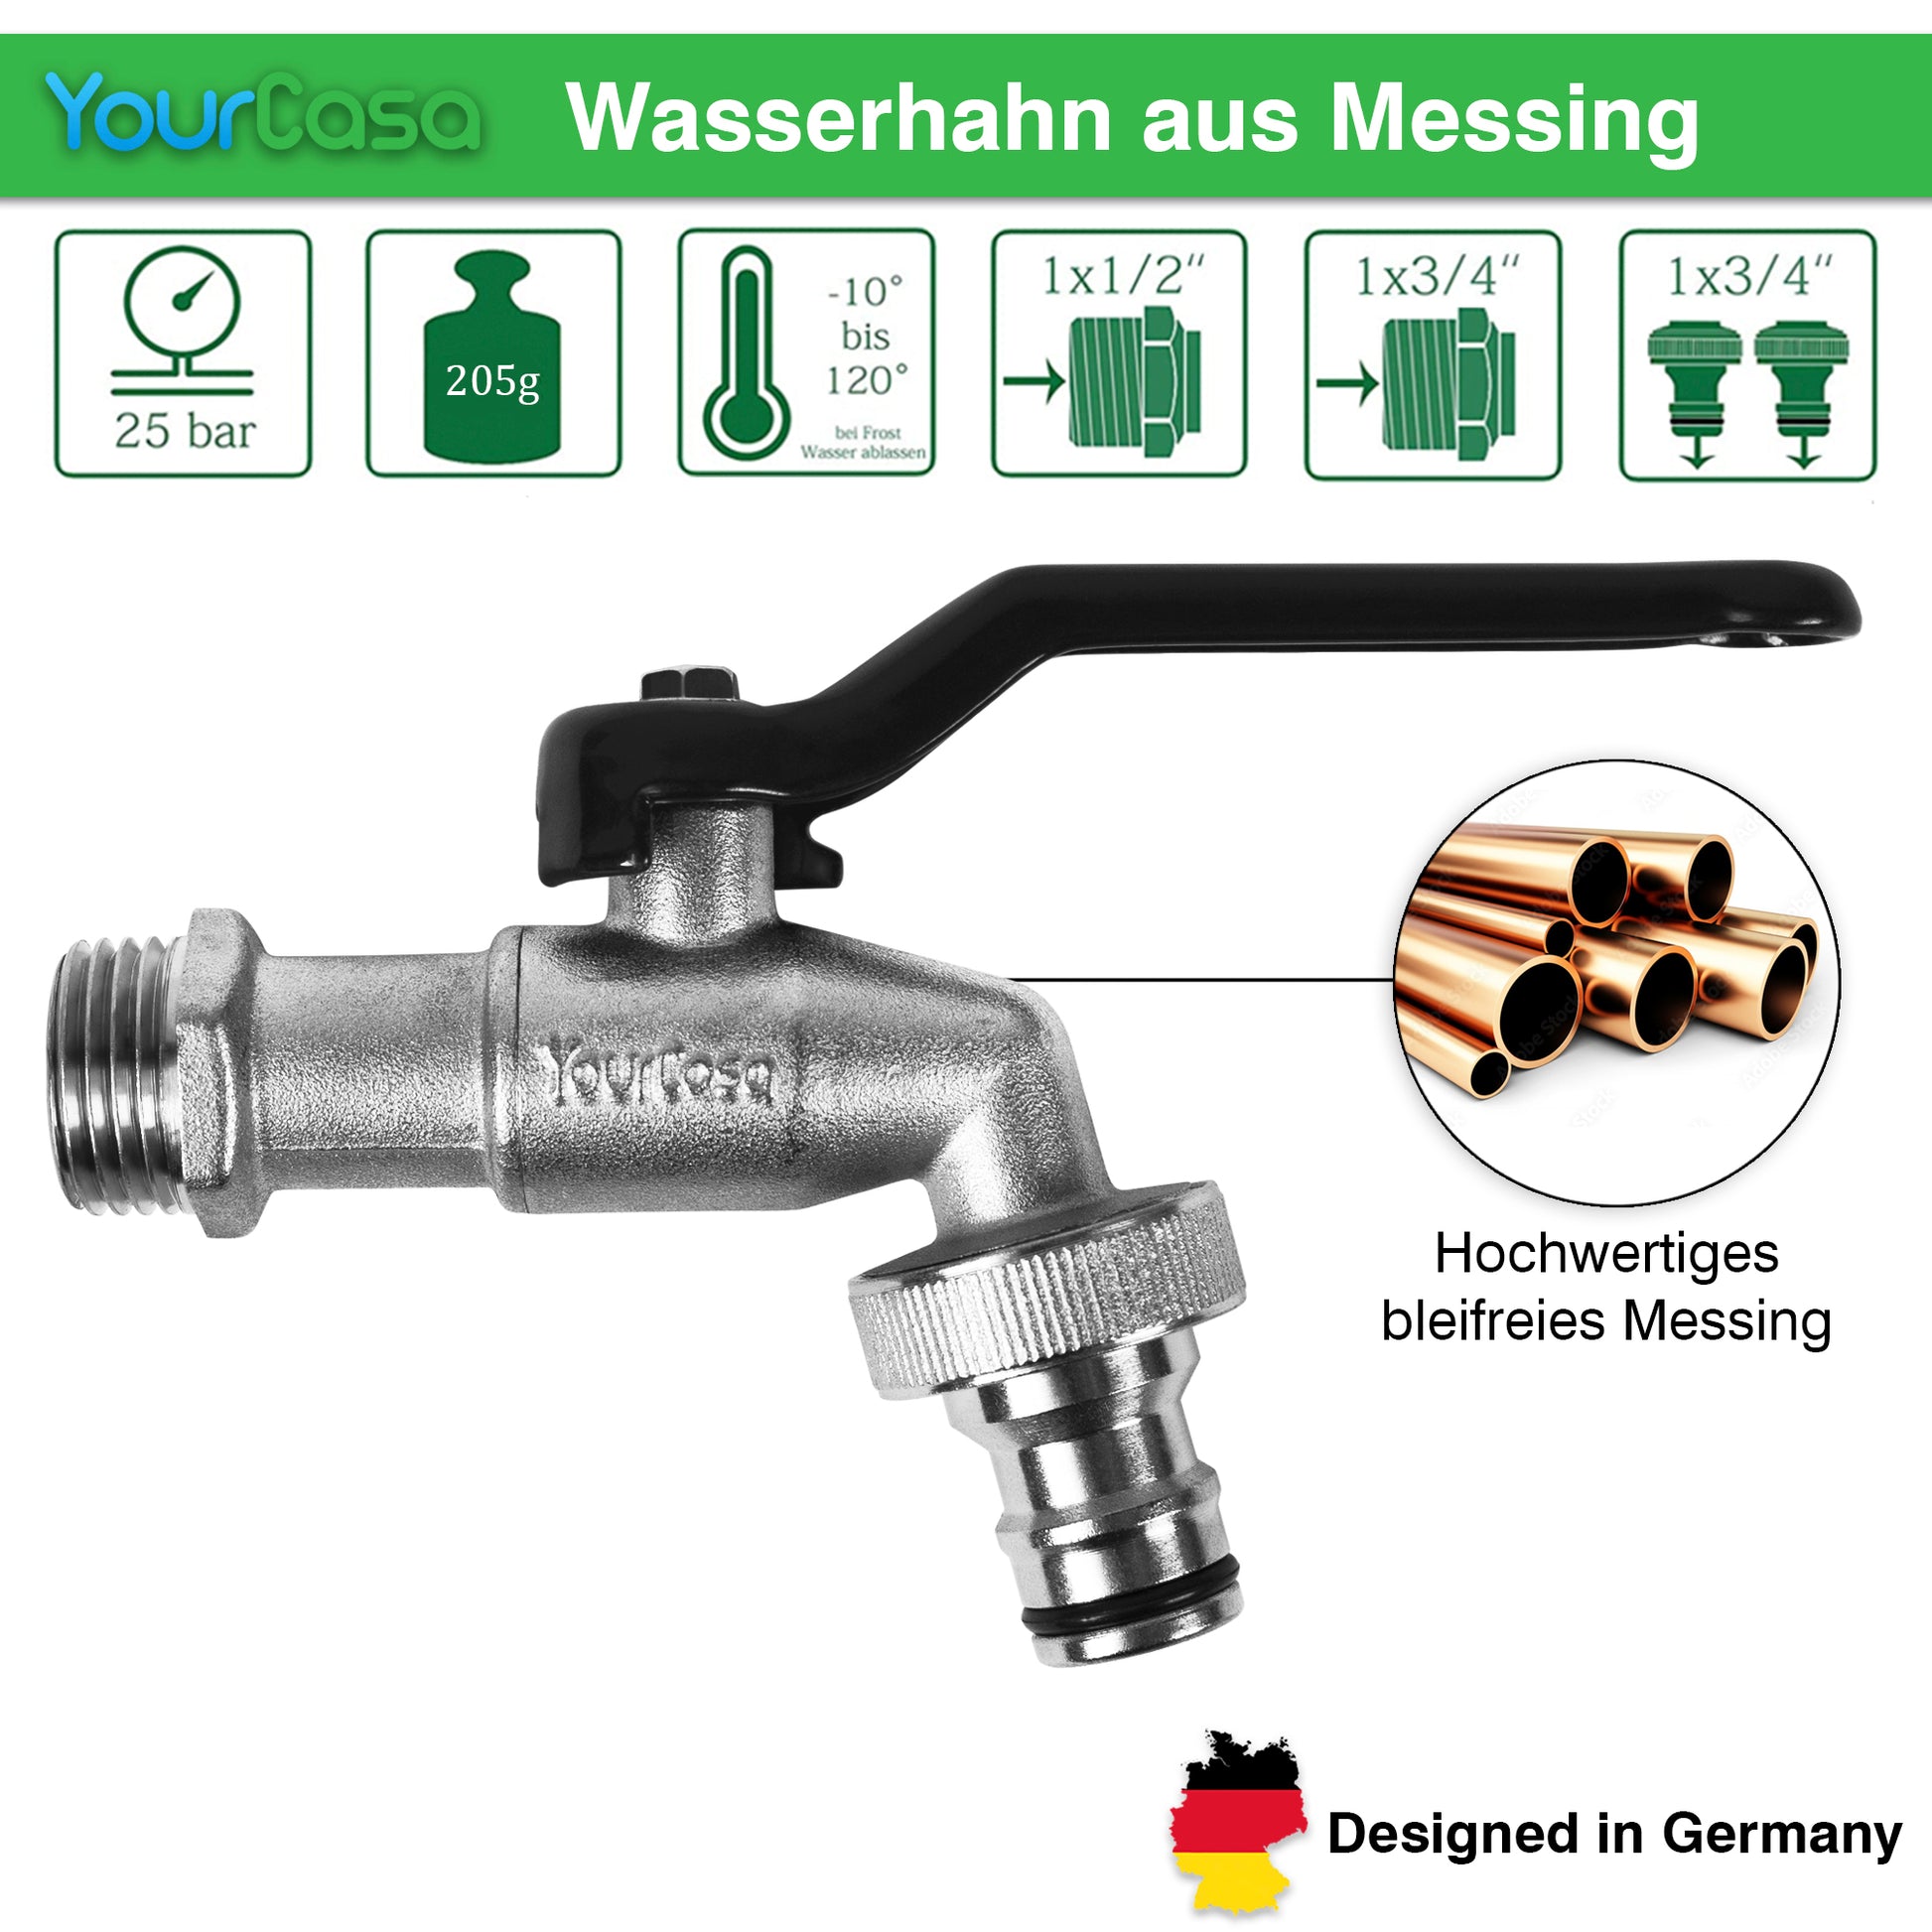 YourCasa® Kugelauslaufhahn aus Messing mit Vierteldrehung und technischen Daten sowie dem Label „Designed in Germany“.